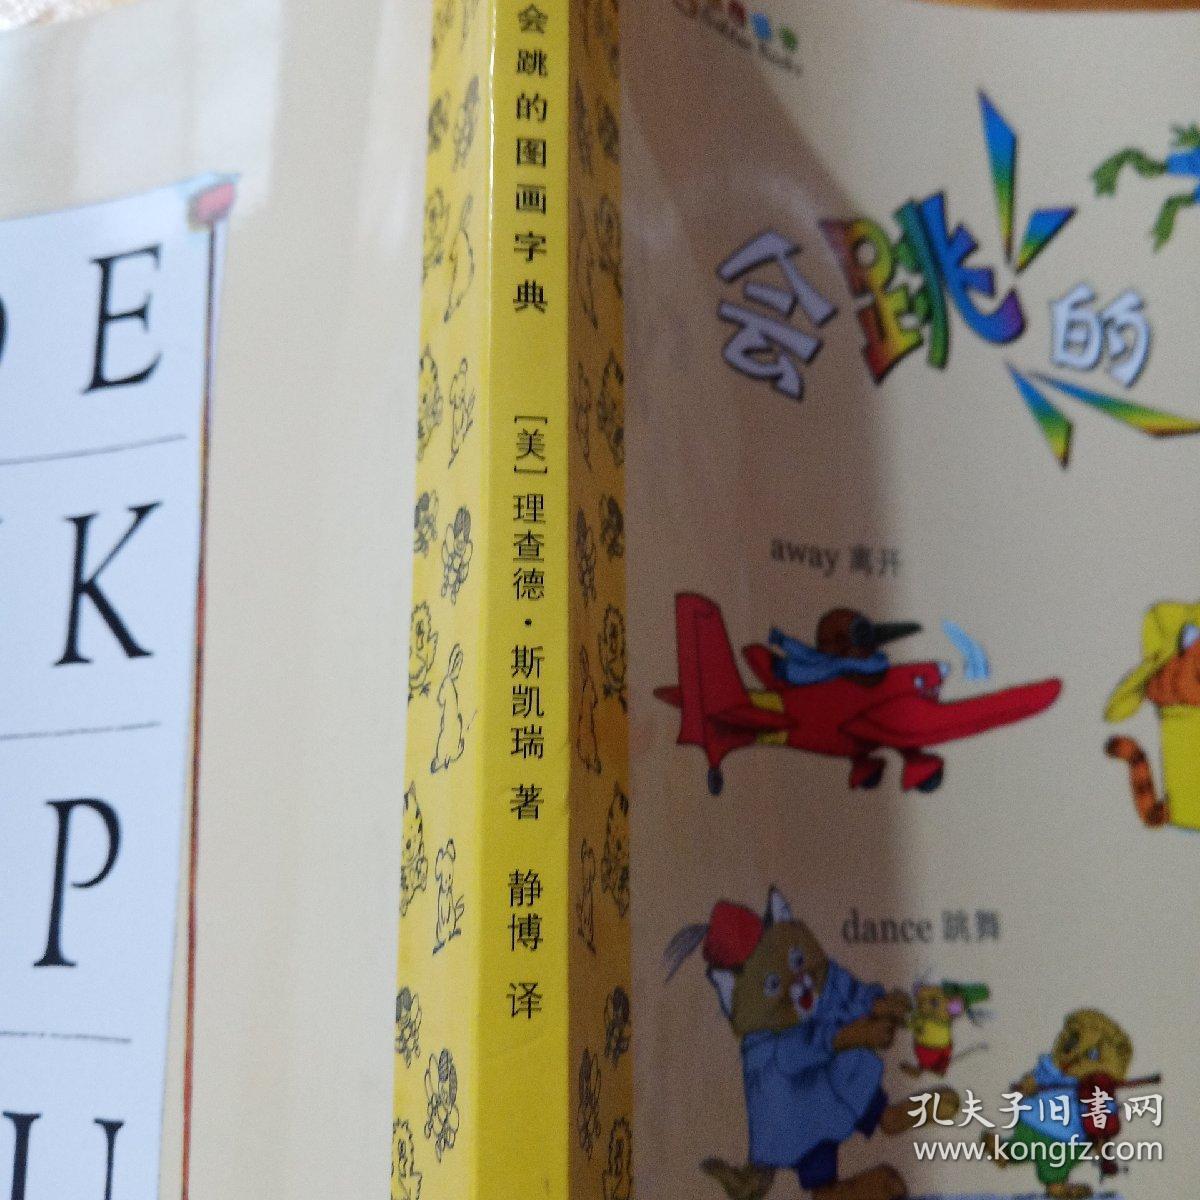 蒲公英图画书馆·金色童书系列·斯凯瑞金色童书（第2辑）：会跳的图画词典